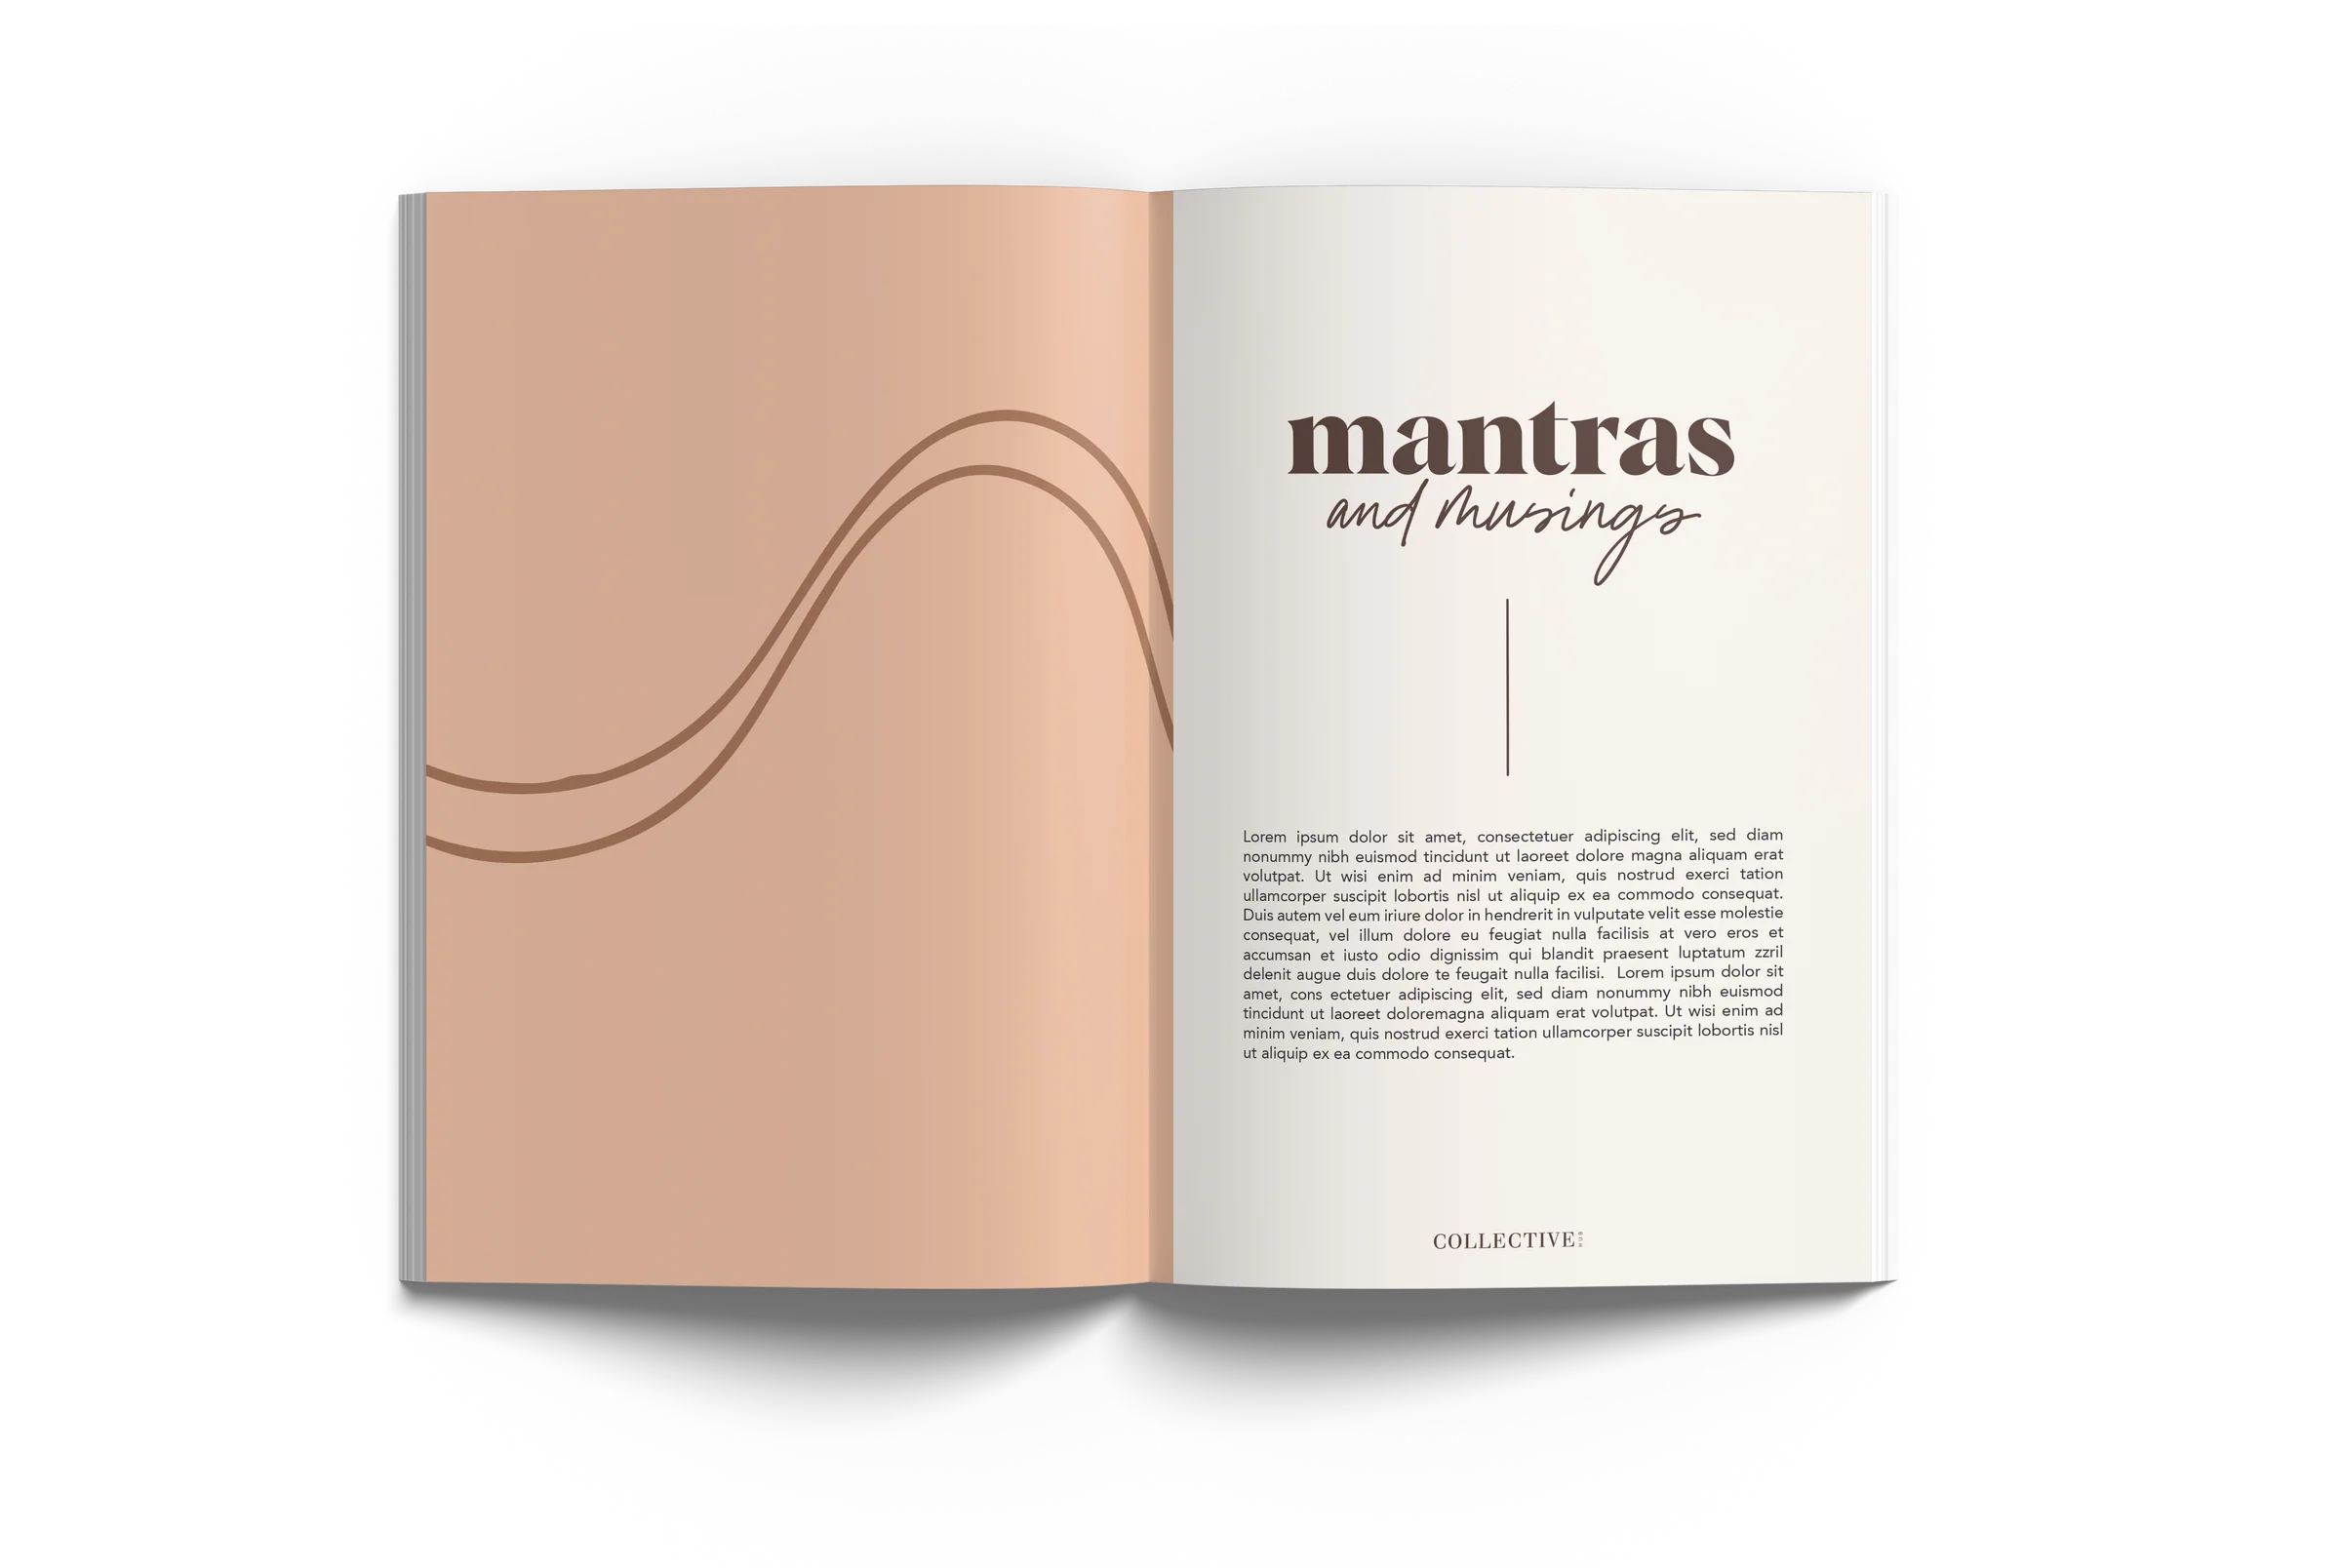 Mantras & Musings Journal